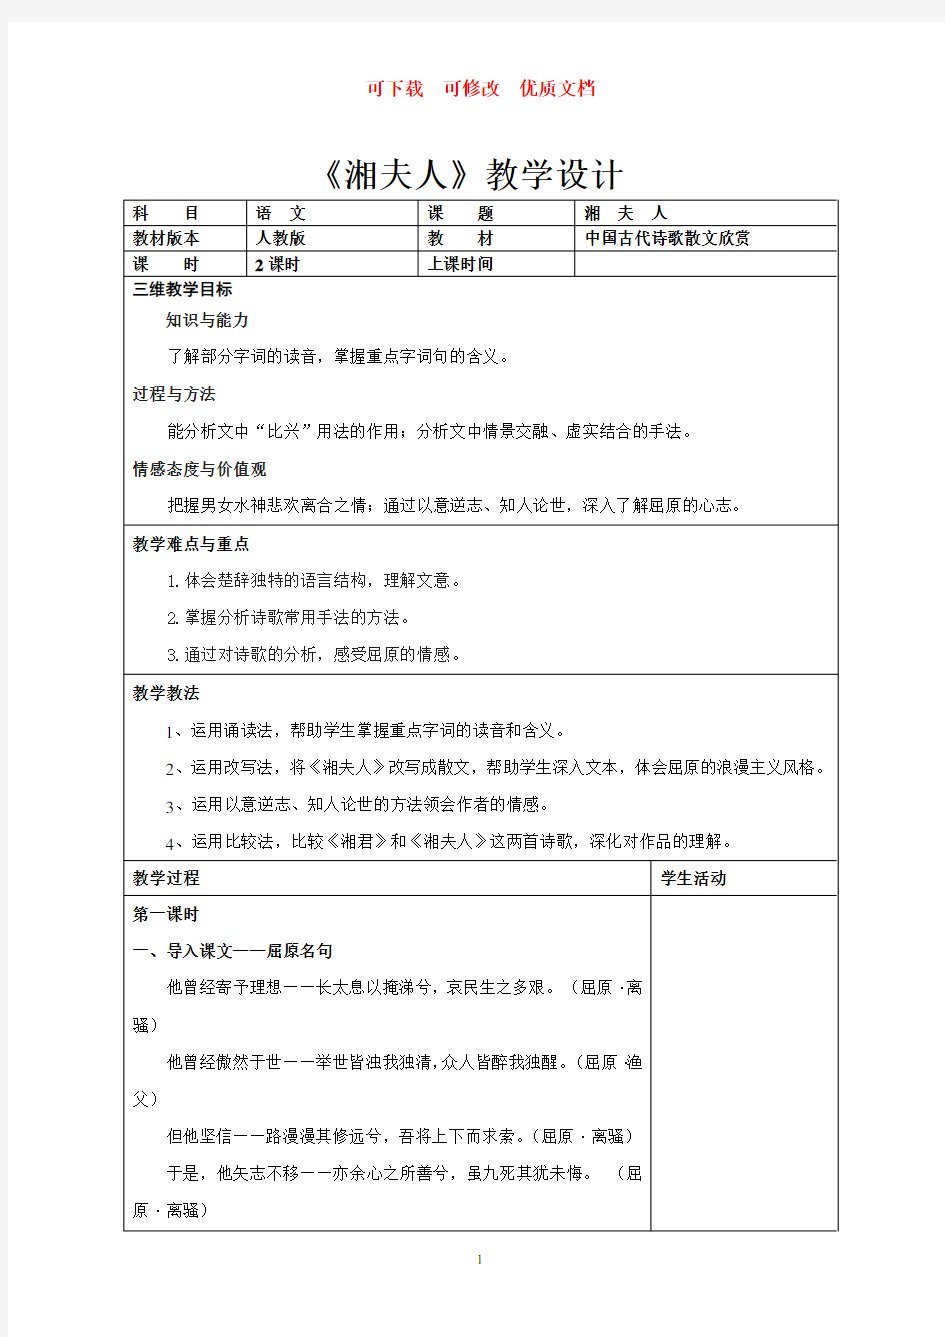 湘夫人教学设计  可下载  可修改  优质文档